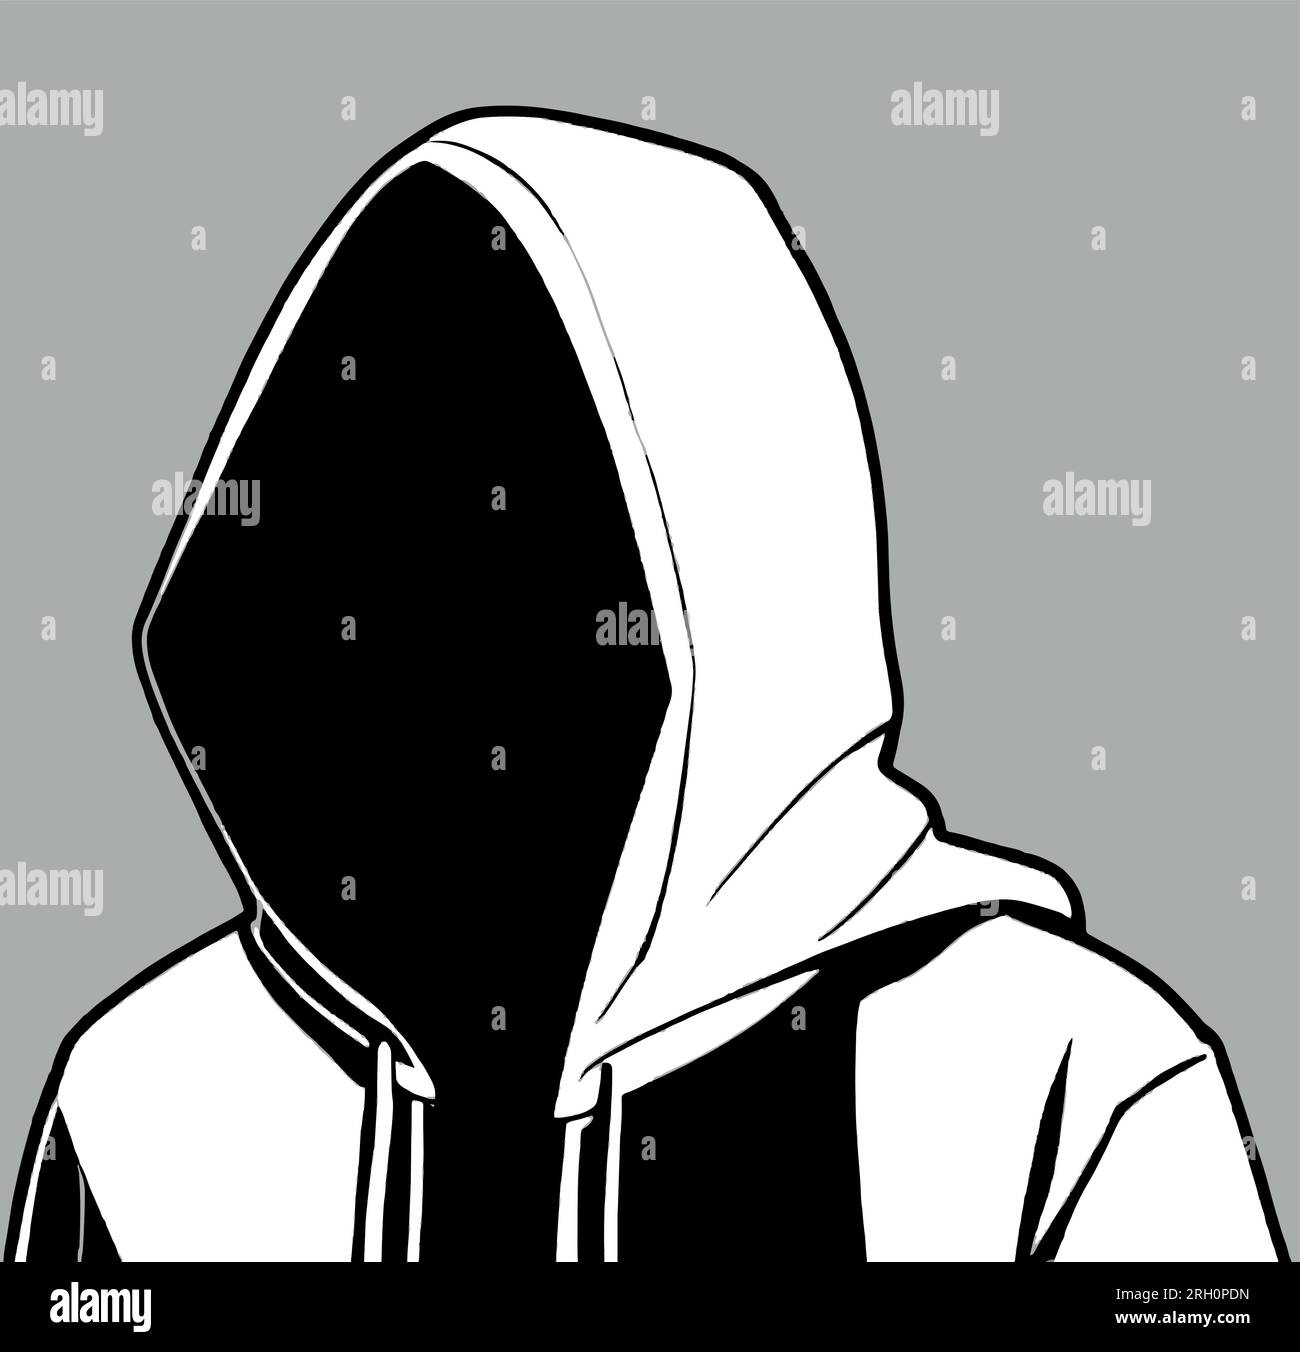 Silhouette of hacker wearing black hoodie sweatshirt. vector ...